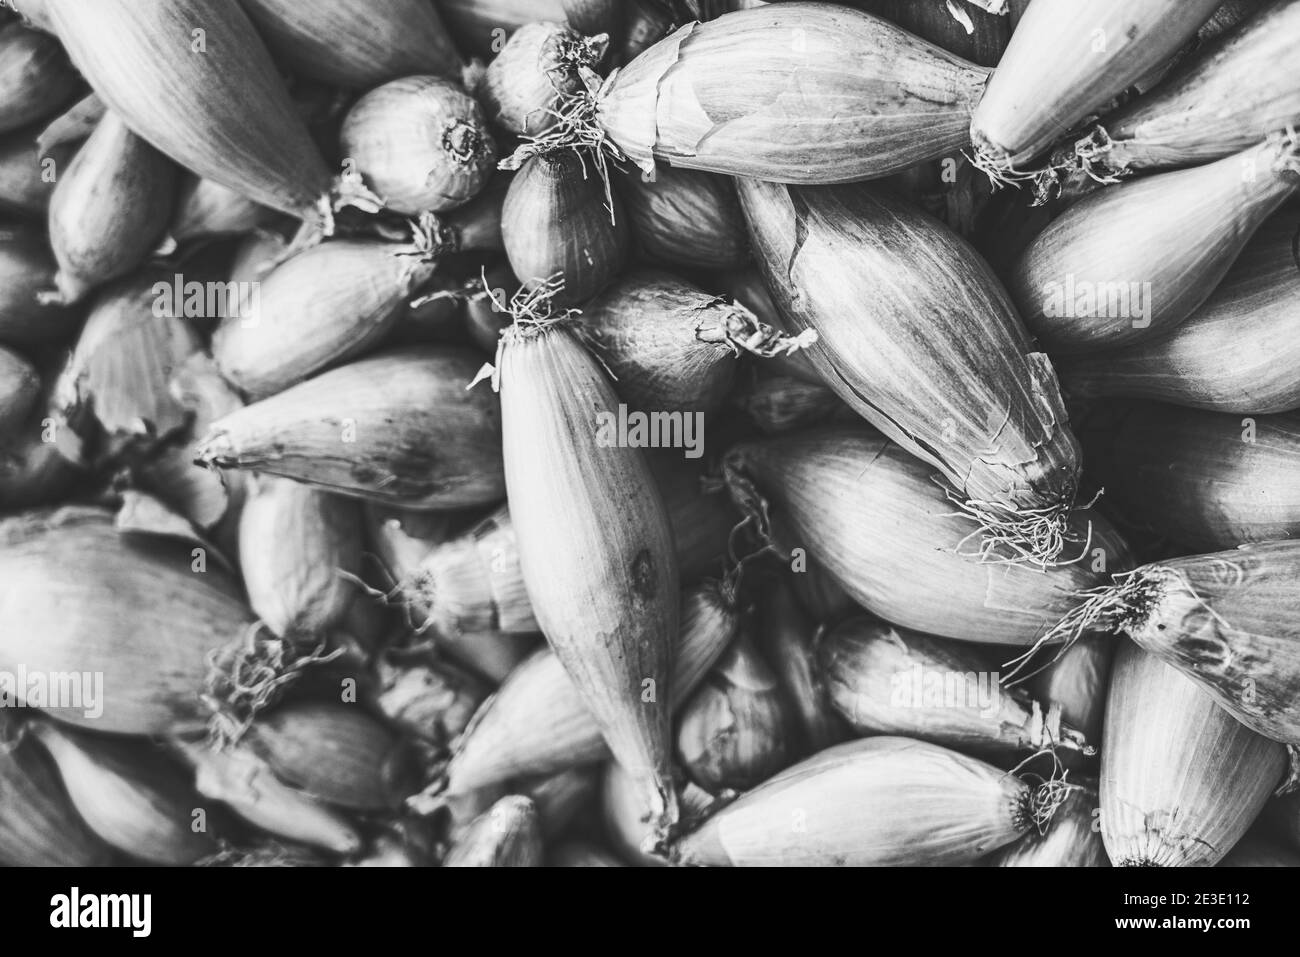 photo noir et blanc vintage d'un tas d'oignons Banque D'Images